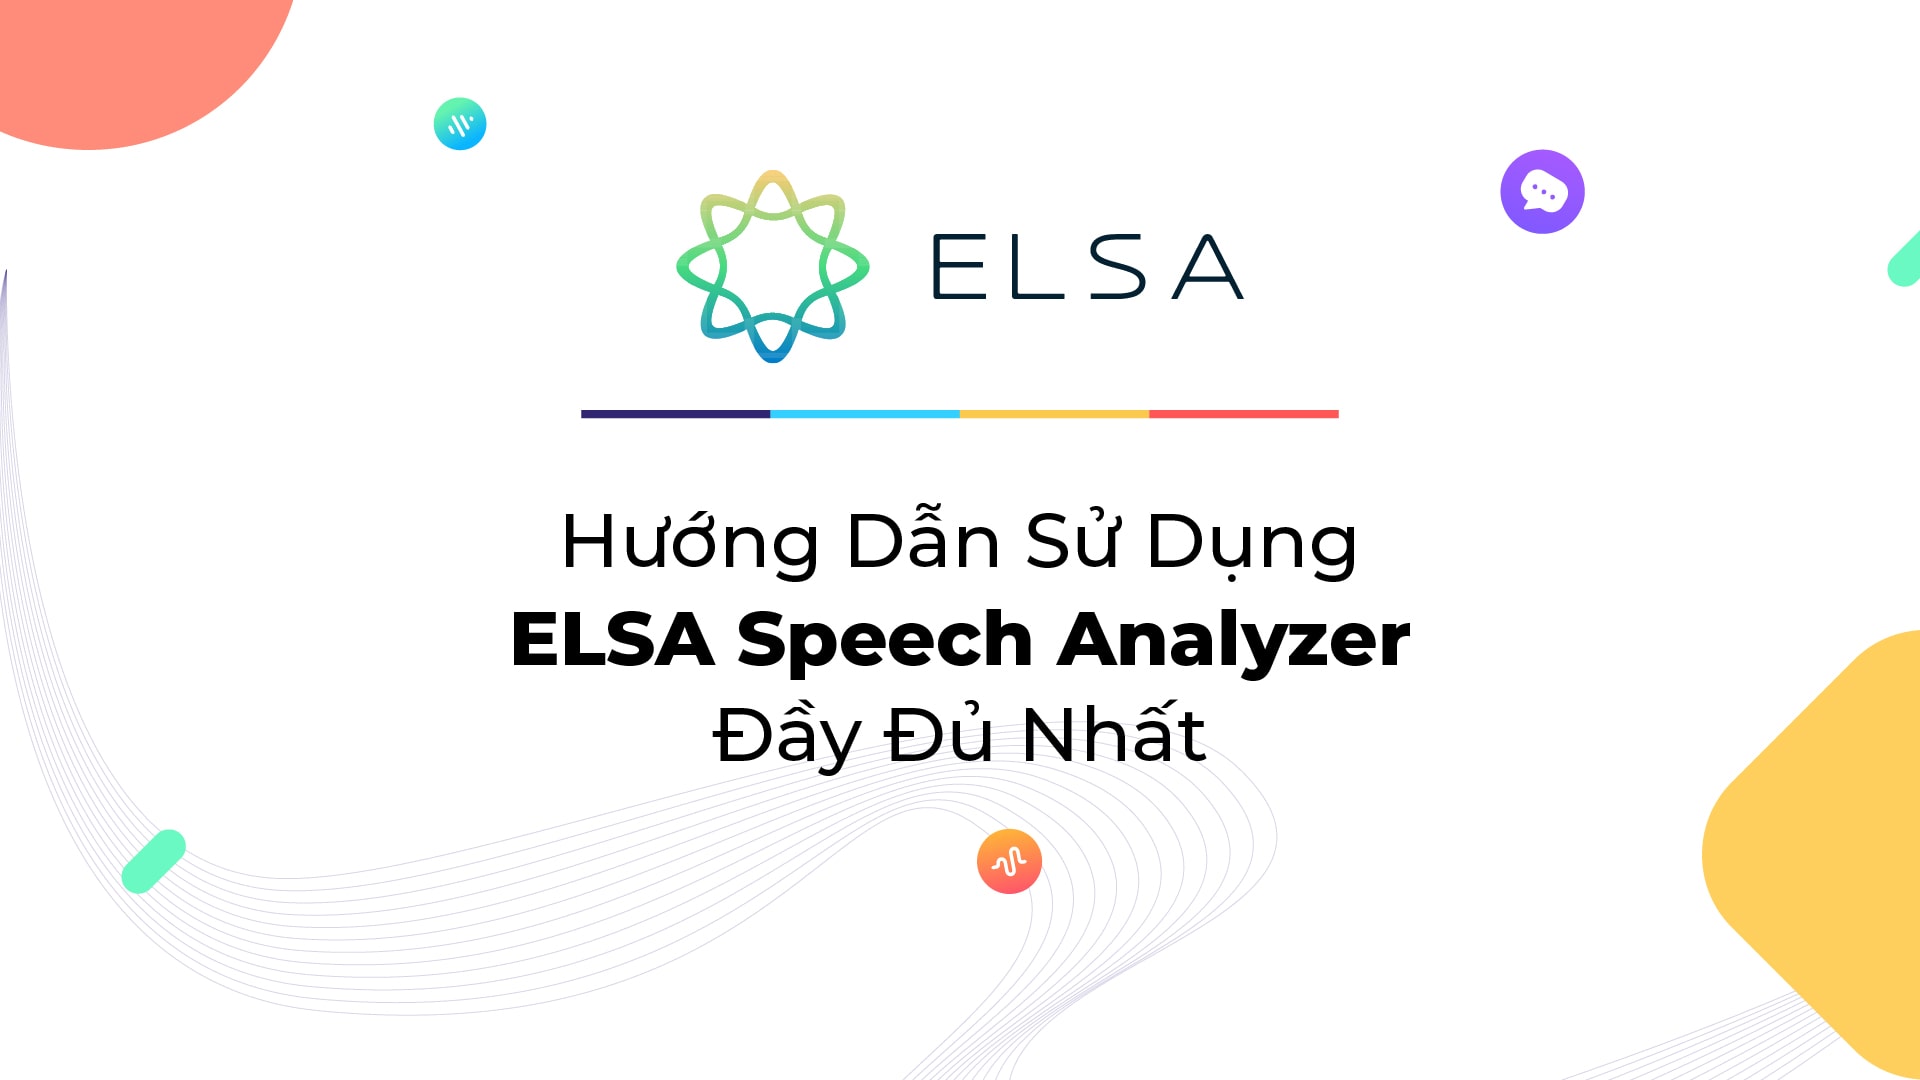 Hướng Dẫn Sử Dụng ELSA Speech Analyzer Đầy Đủ Nhất